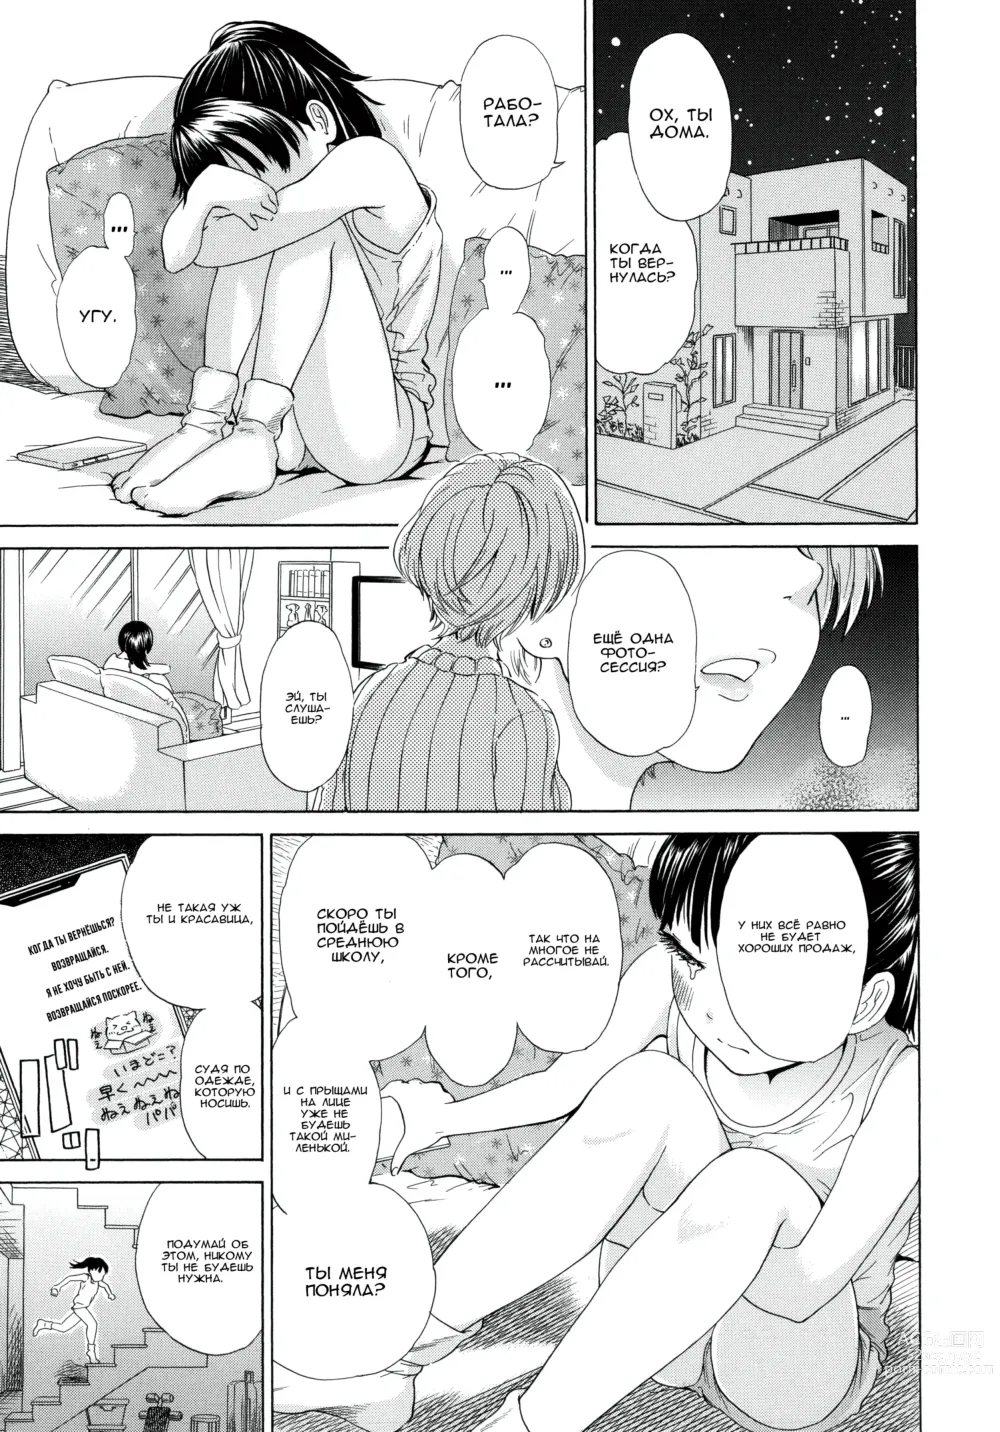 Page 3 of manga Папочка, пожалуйста, разведись!